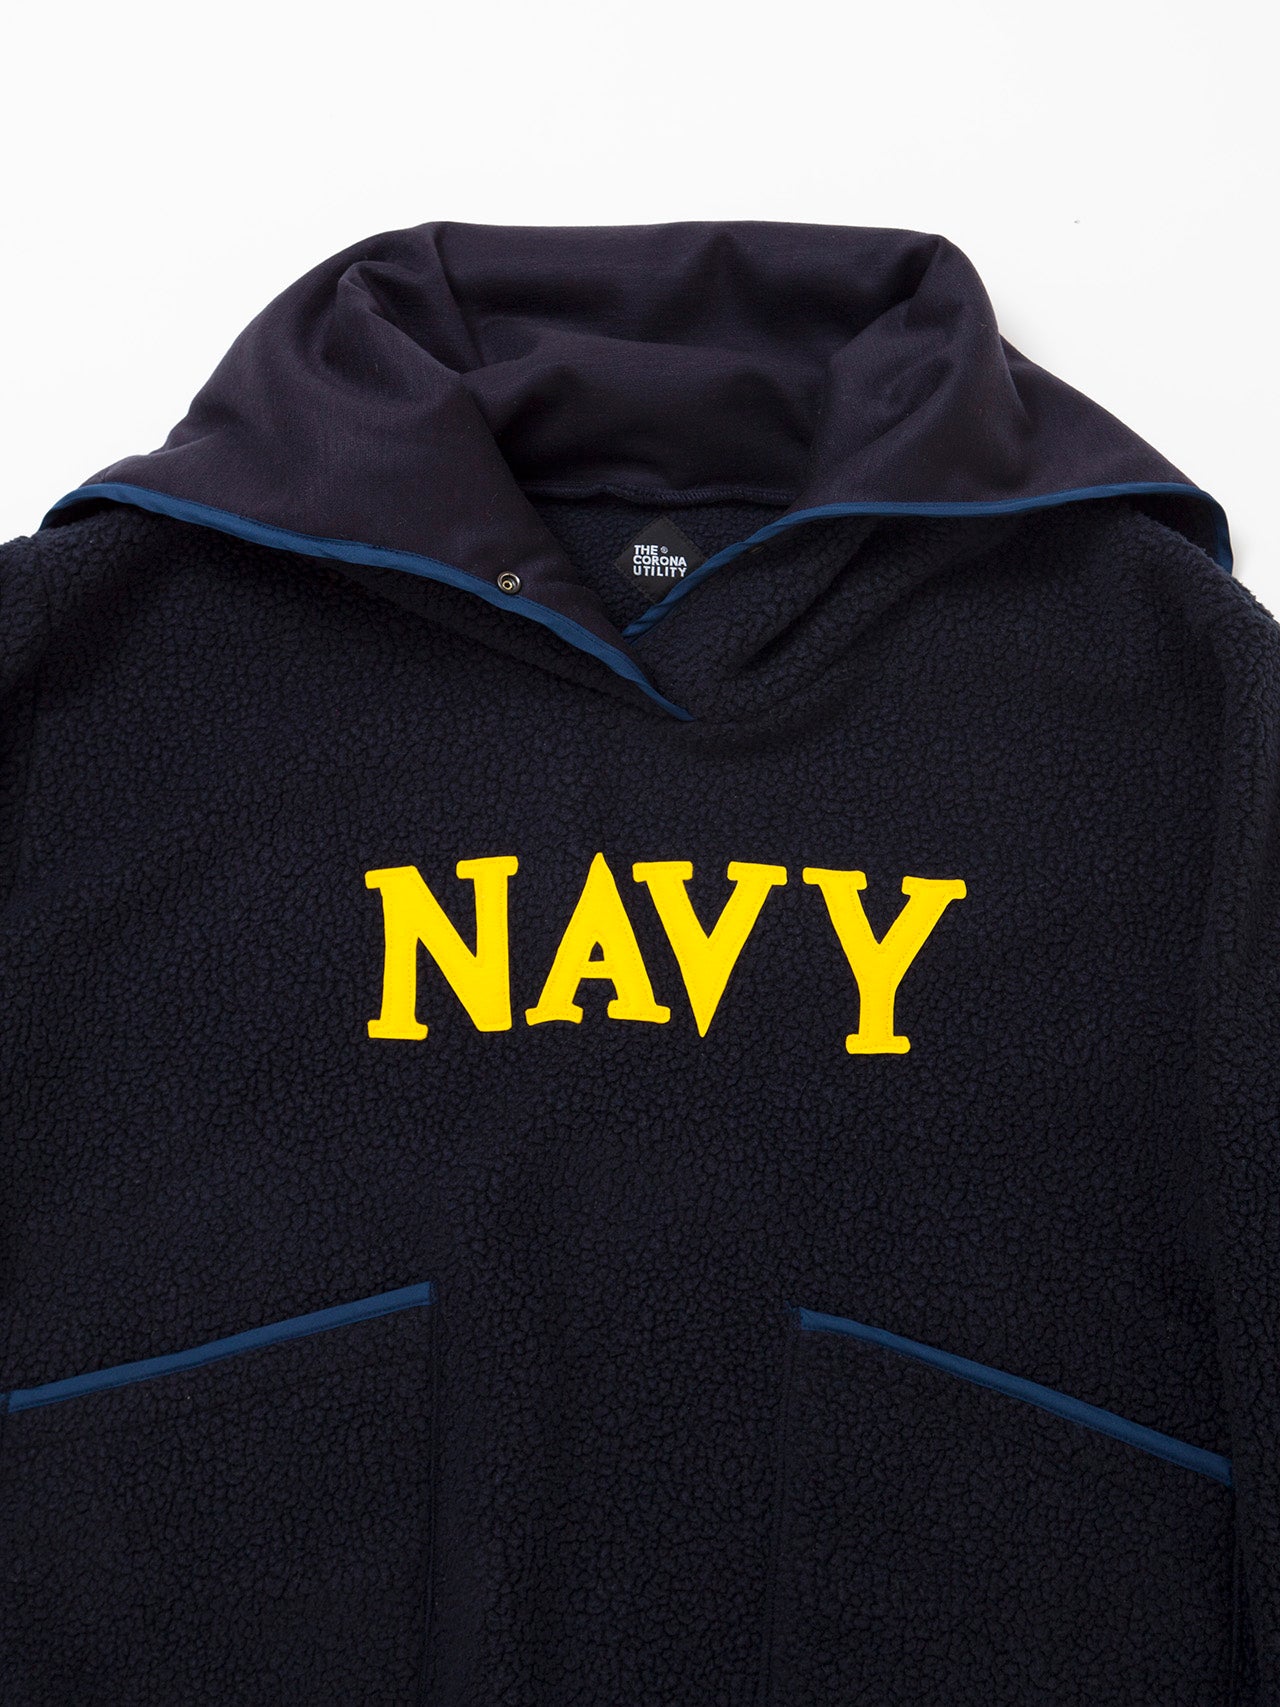 CJ013 - CORONA・NAVY Athletic Parka / POLARTEC Heavy Boa Fleece w/"NAVY" Felt - Navy